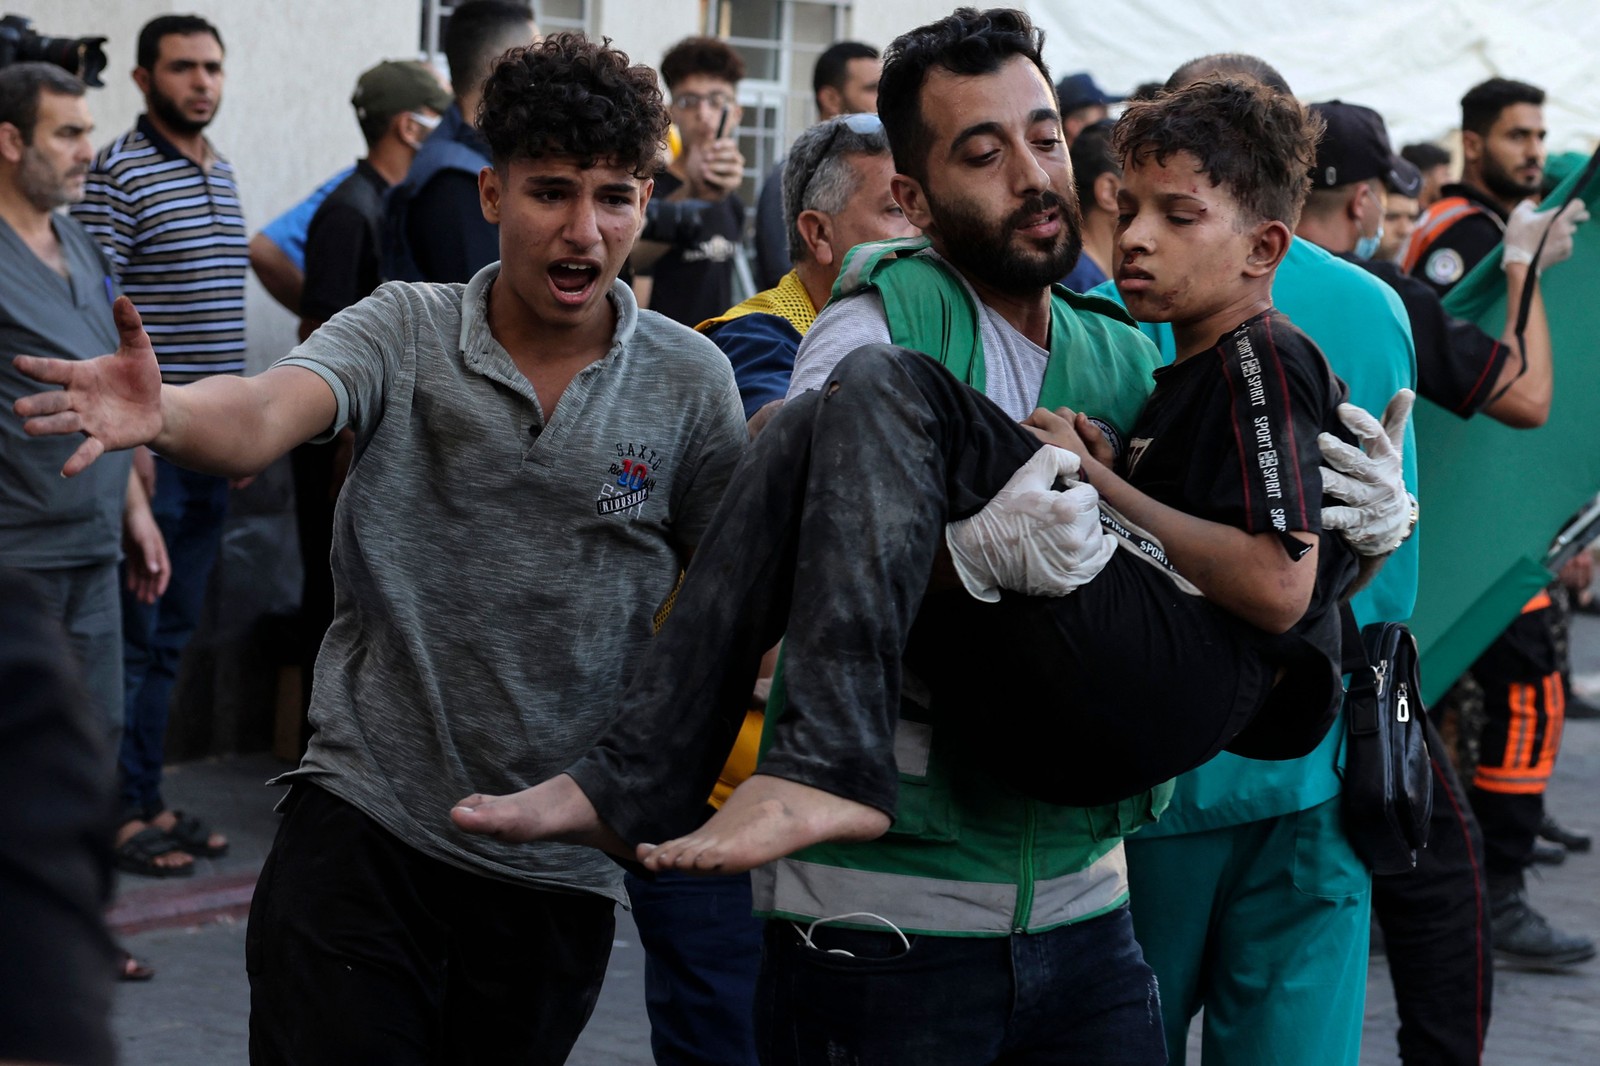 Médico do pronto-socorro disse à AFP que as equipes médicas lidam com 'um grande número de vítimas' — Foto: Mohammed Abed / AFP